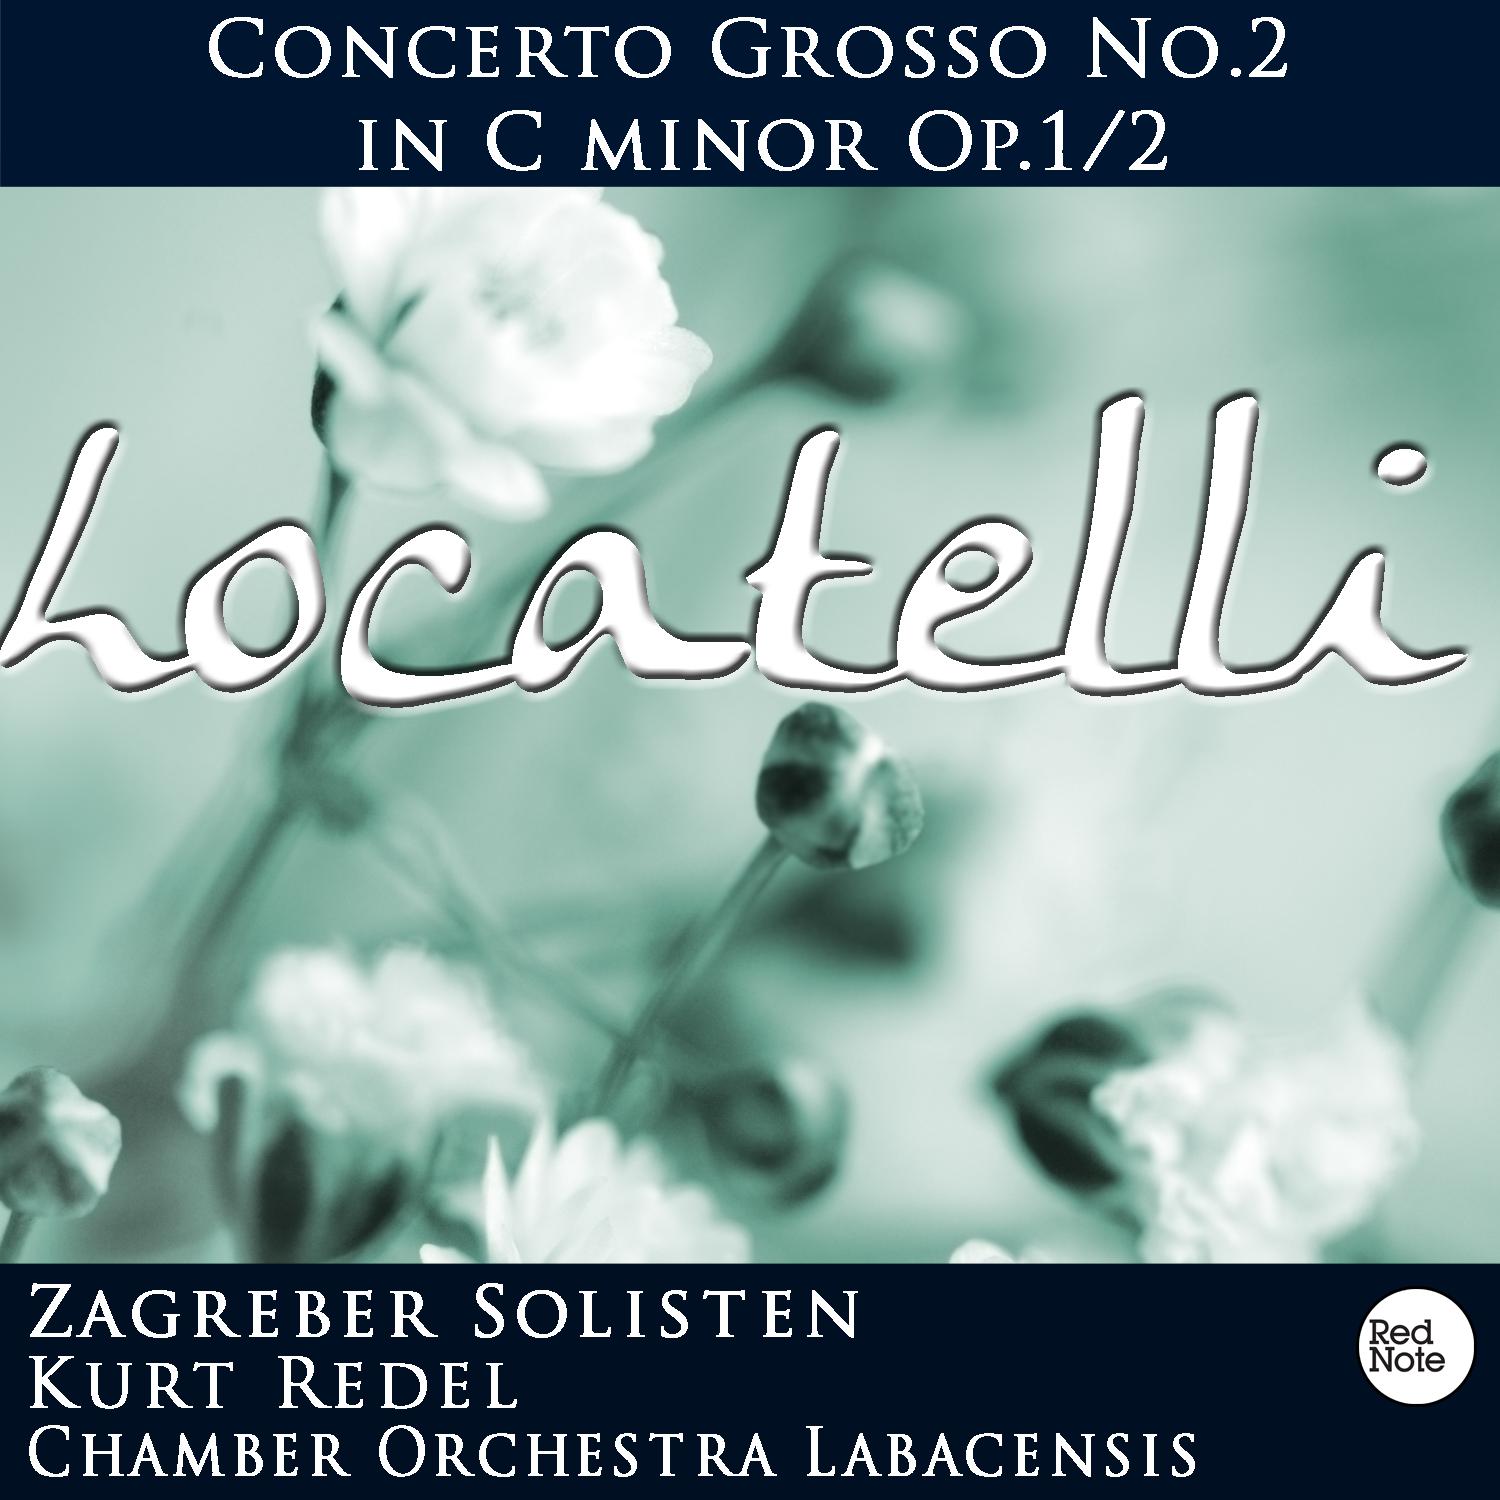 Concerto Grosso No.2 in C Minor, Op.1/2: III. Allegro